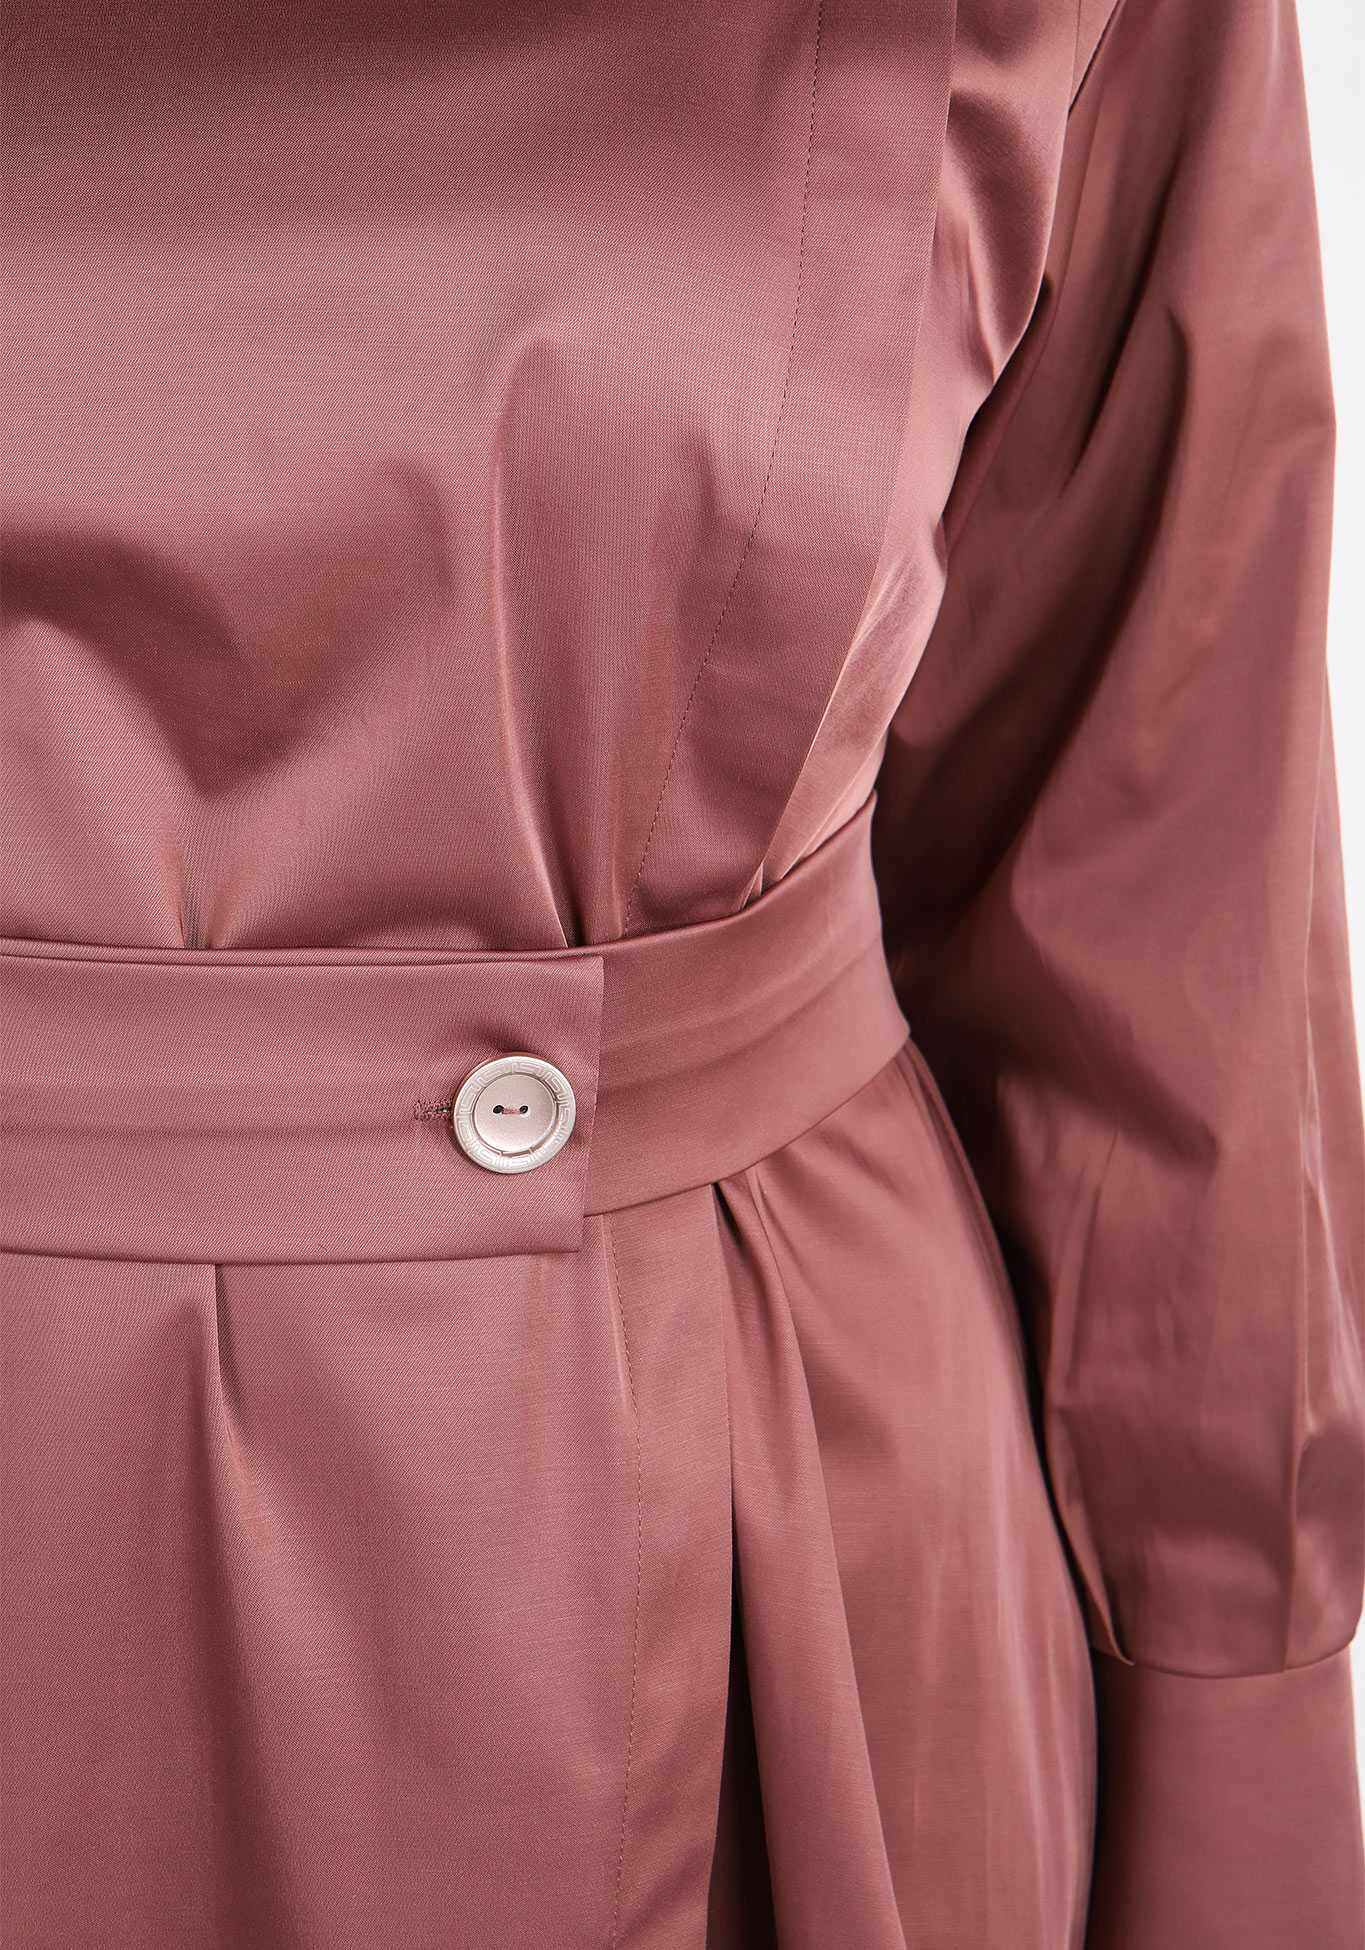 Платье с поясом на пуговицах Sarah Morenberg, размер 48, цвет тёмно-лиловый - фото 5